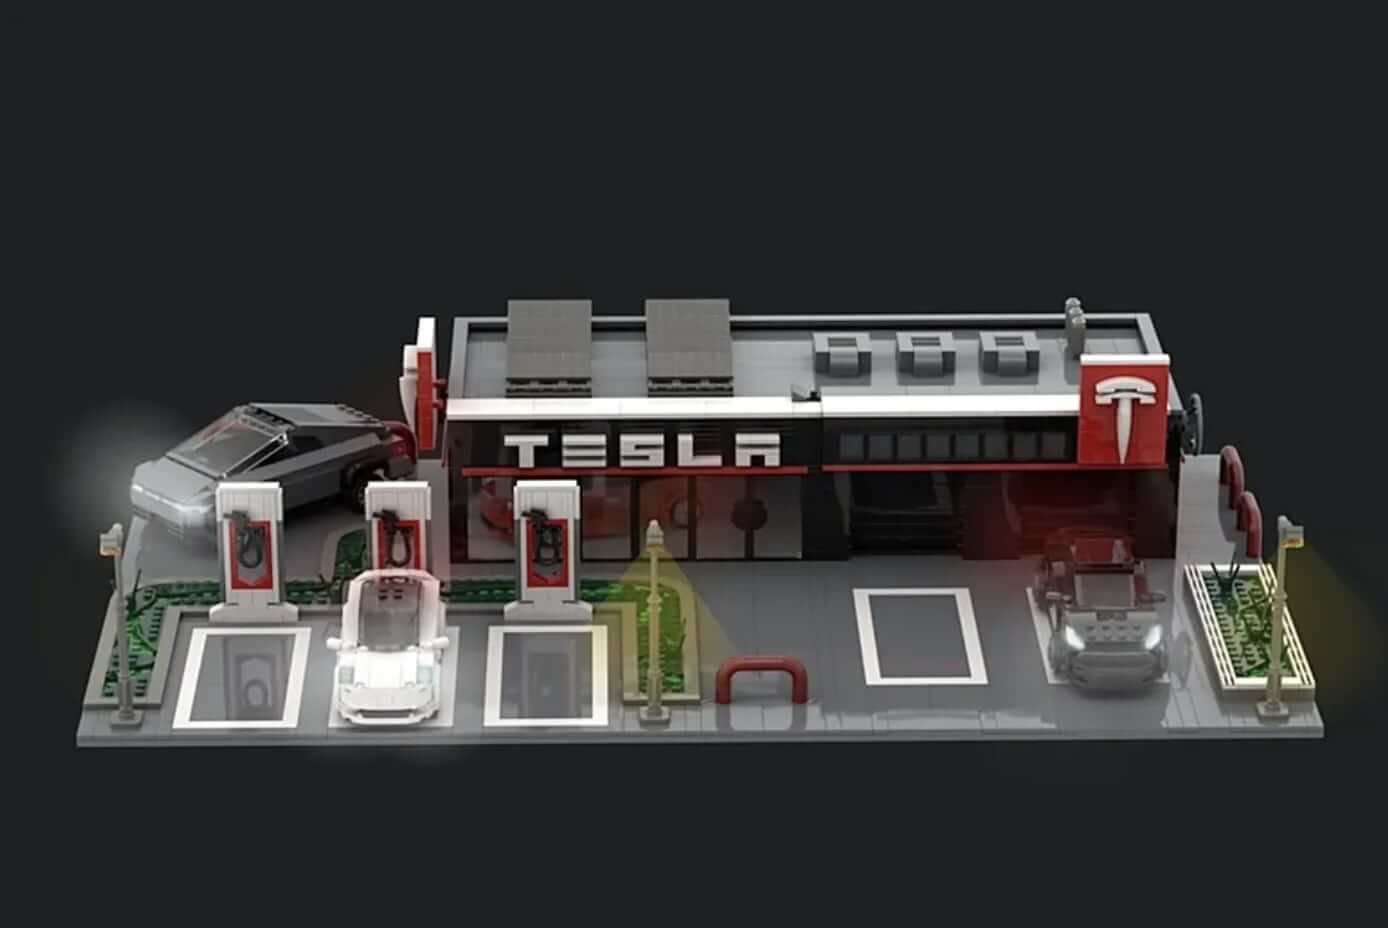 Tesla Supercharger mendapat Lego-fied dalam projek idea peminat gila ini